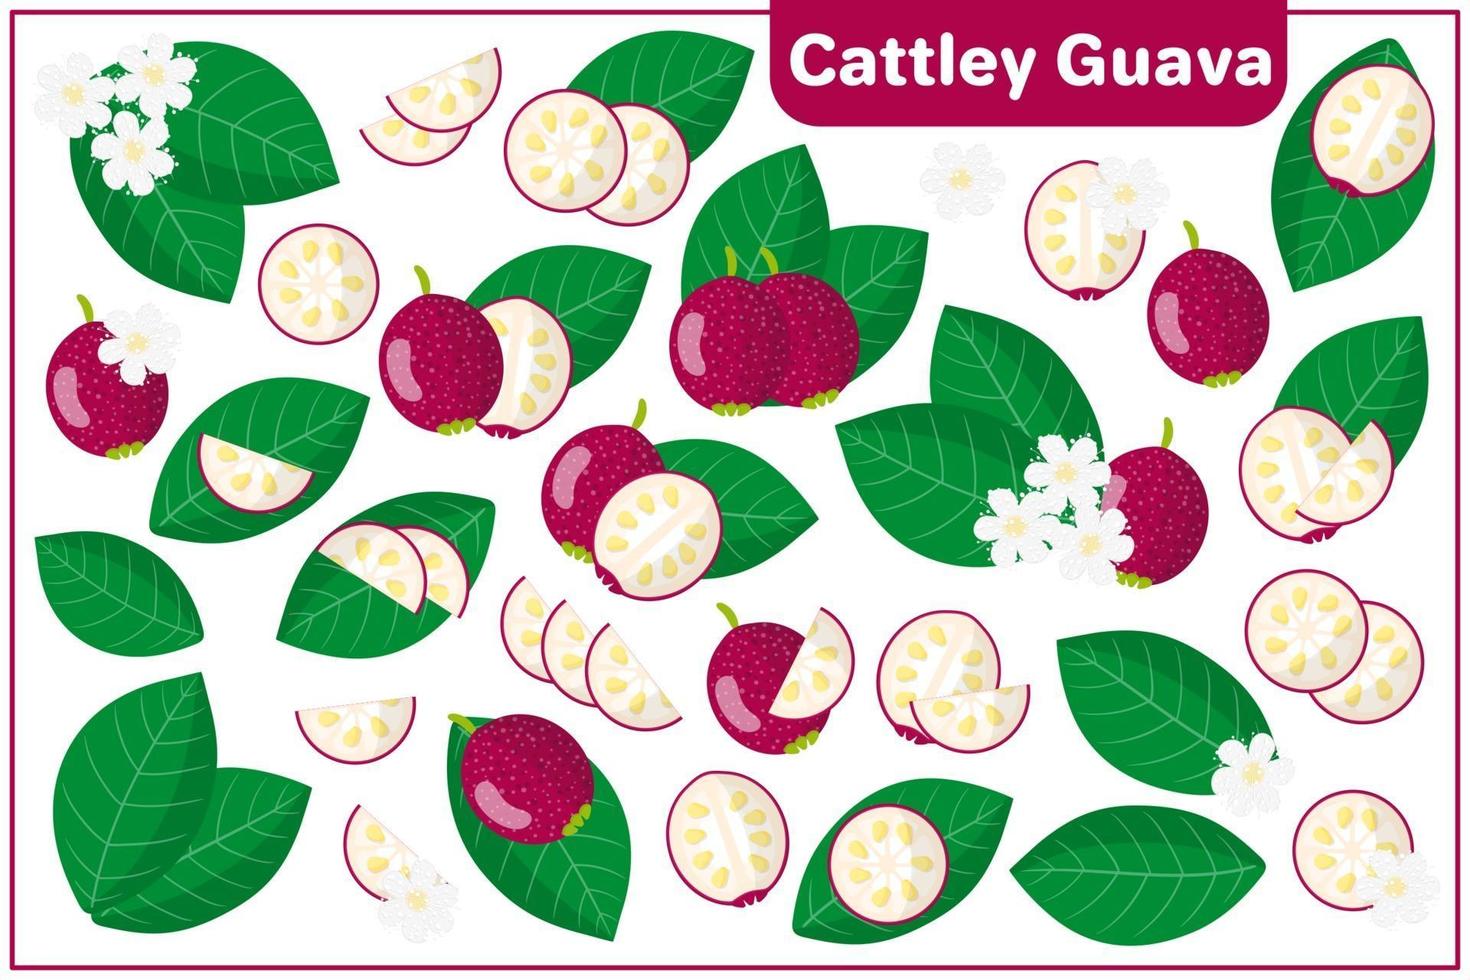 uppsättning vektor tecknad illustrationer med cattley guava exotiska frukter, blommor och blad isolerad på vit bakgrund